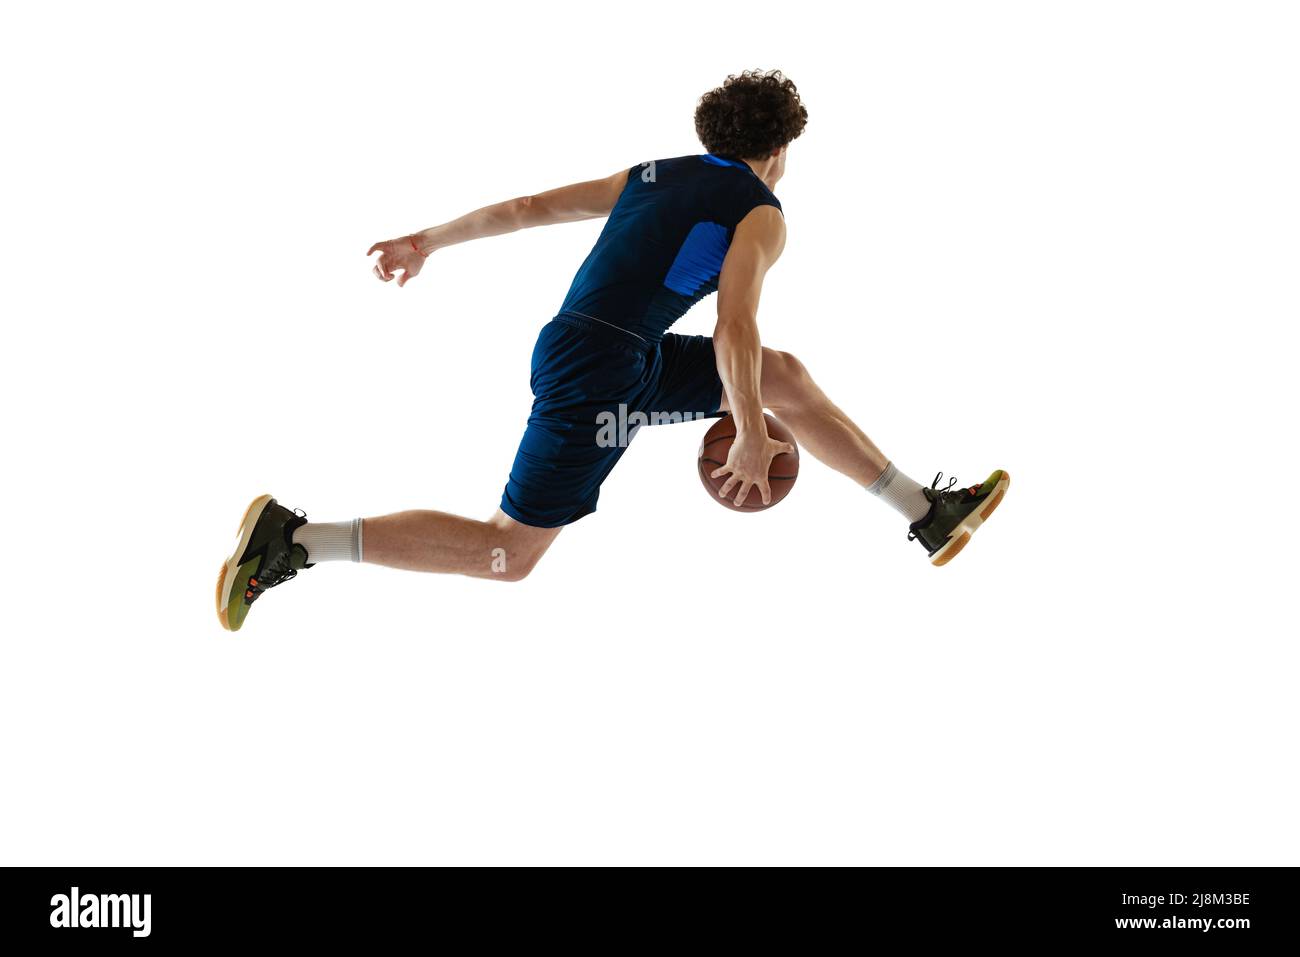 Ritratto dinamico del giovane uomo, giocatore di basket che gioca a basket isolato su sfondo bianco. Concetto di sport, movimento, energia e azione Foto Stock